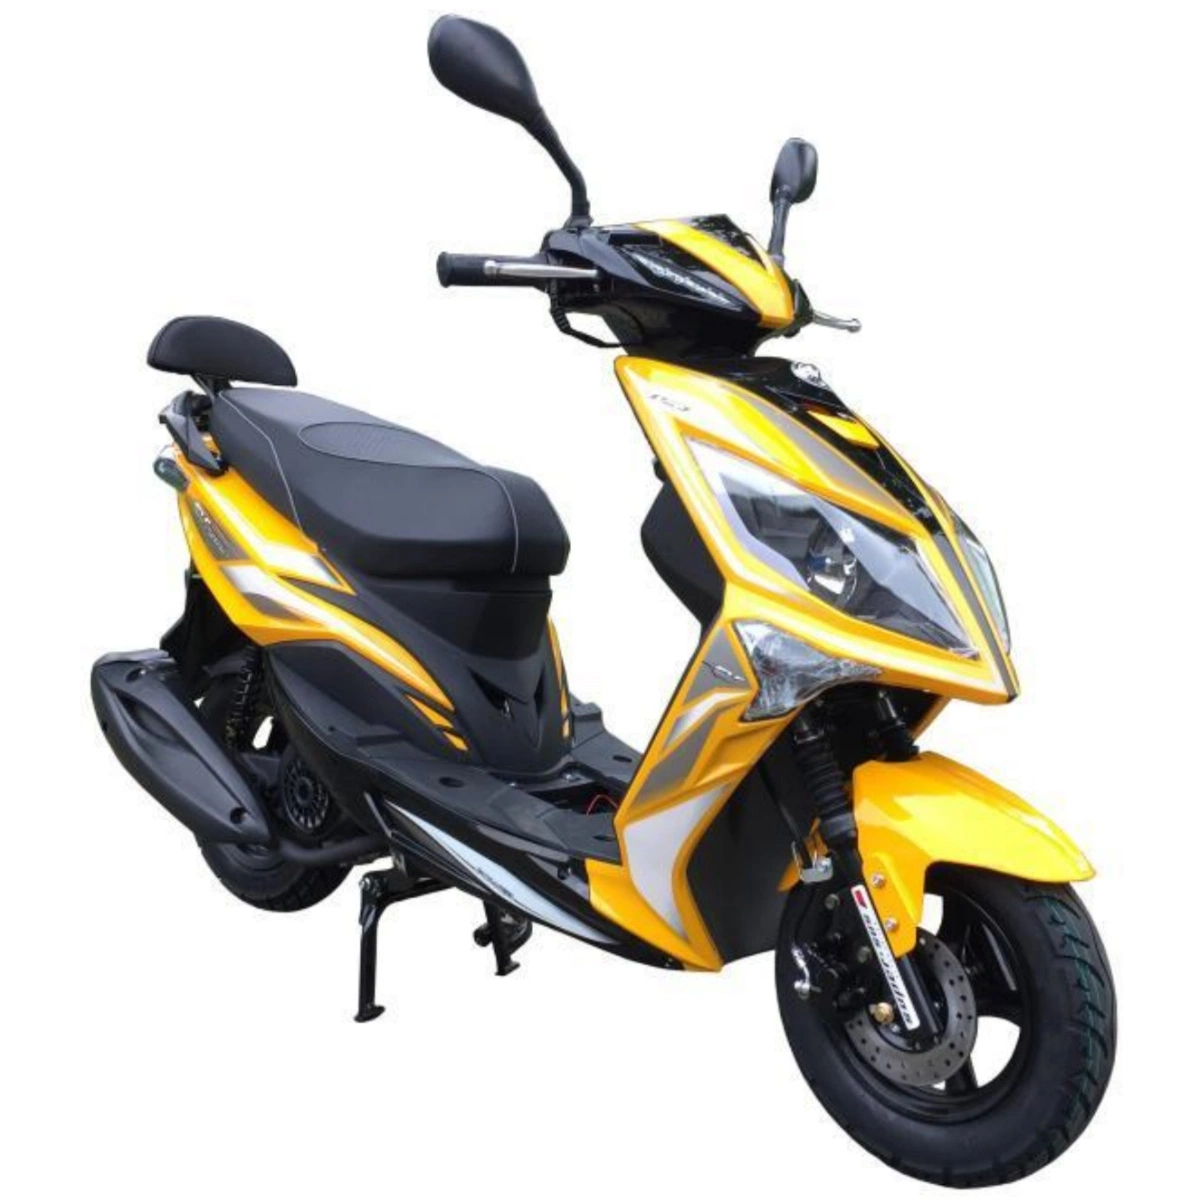 Gasolina de qualidade superior para adultos de Scooter Ciclomotor Motociclo Gasolina Bicicletas de sujidade